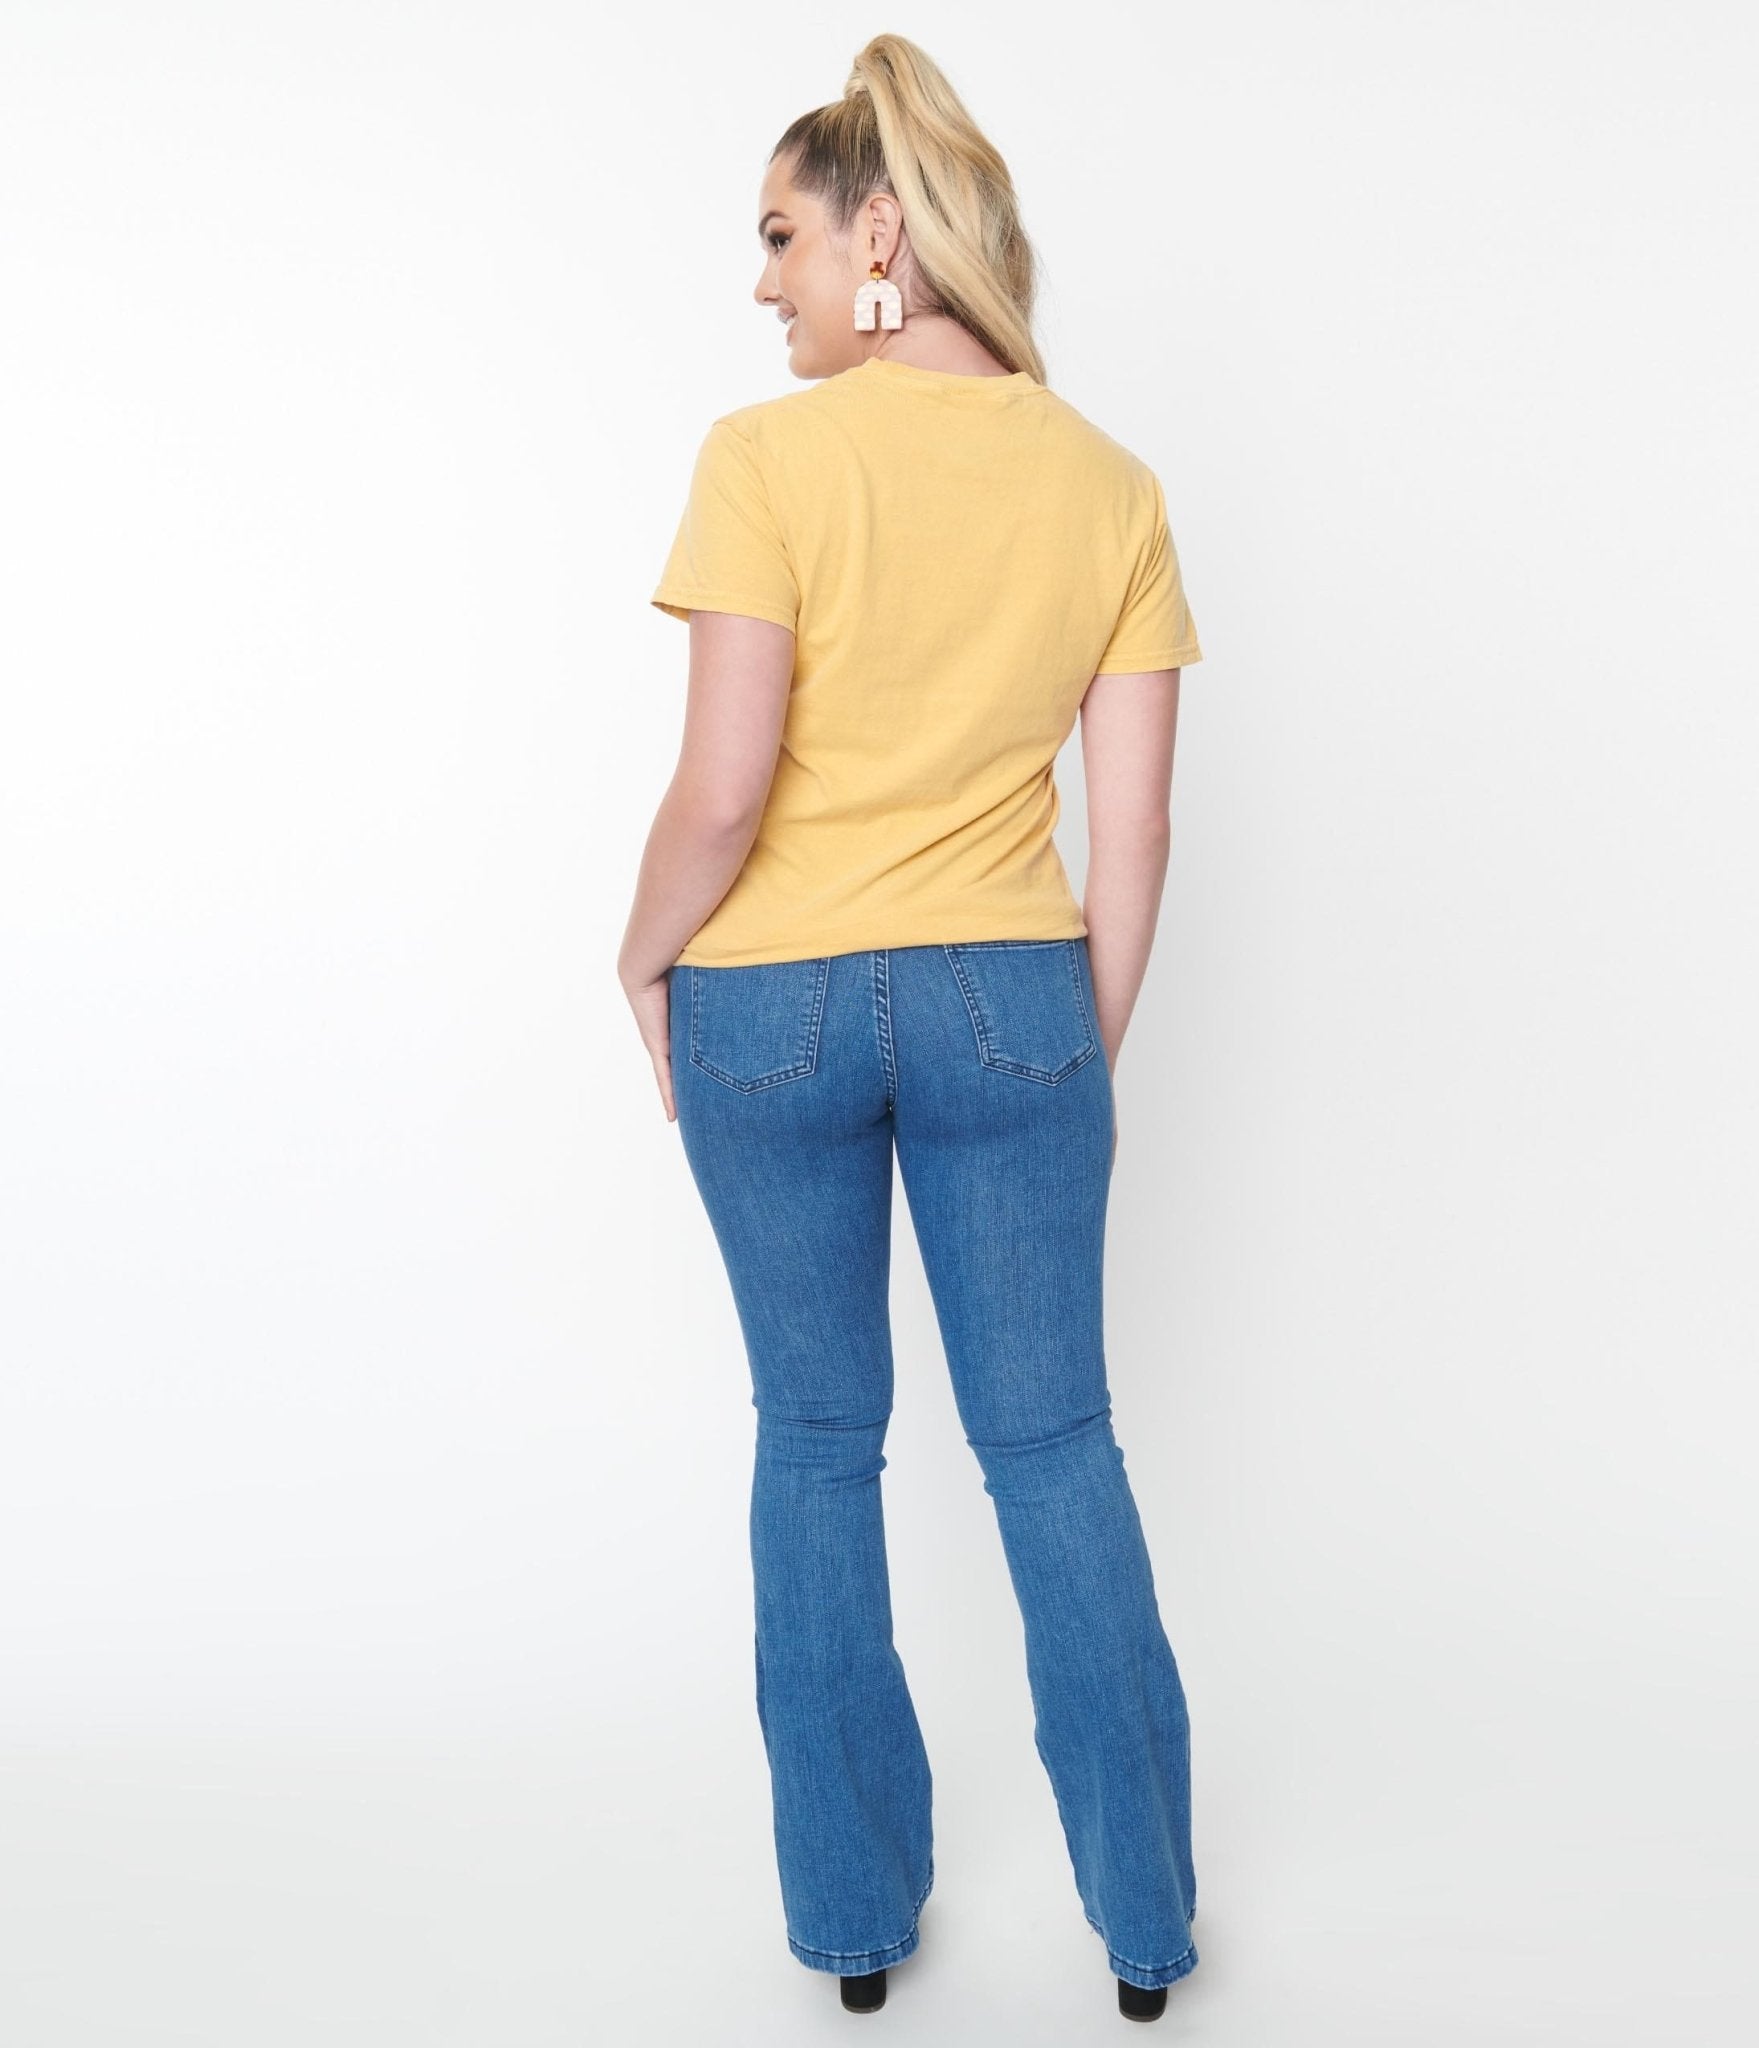 Medium Denim Star Jeans - Unique Vintage - Womens, BOTTOMS, JEANS